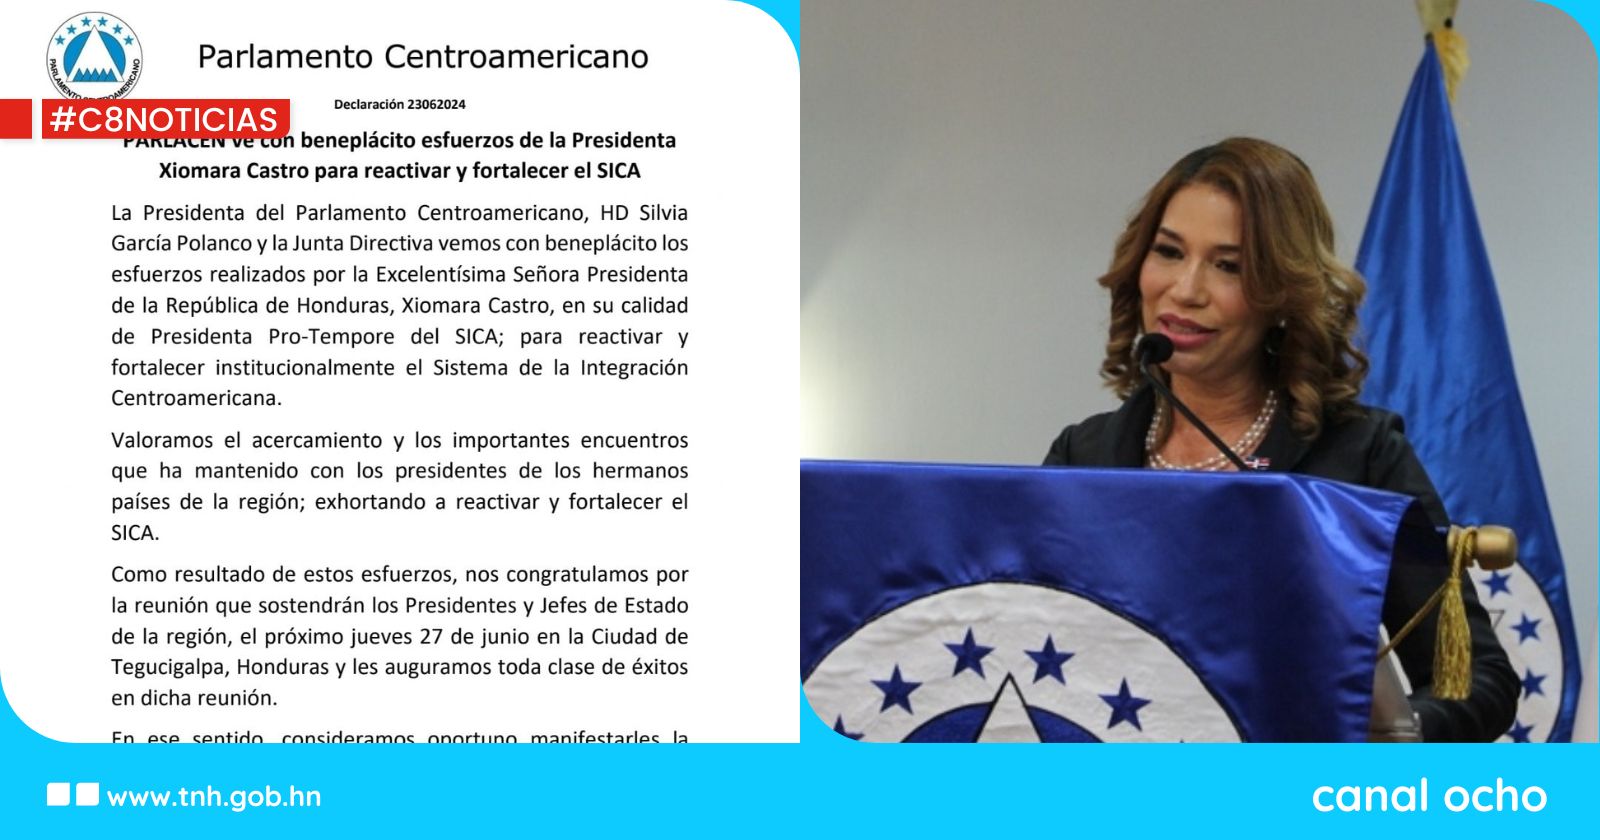 PARLACEN ve con beneplácito esfuerzos de la Presidenta Castro para reactivar y fortalecer el SICA